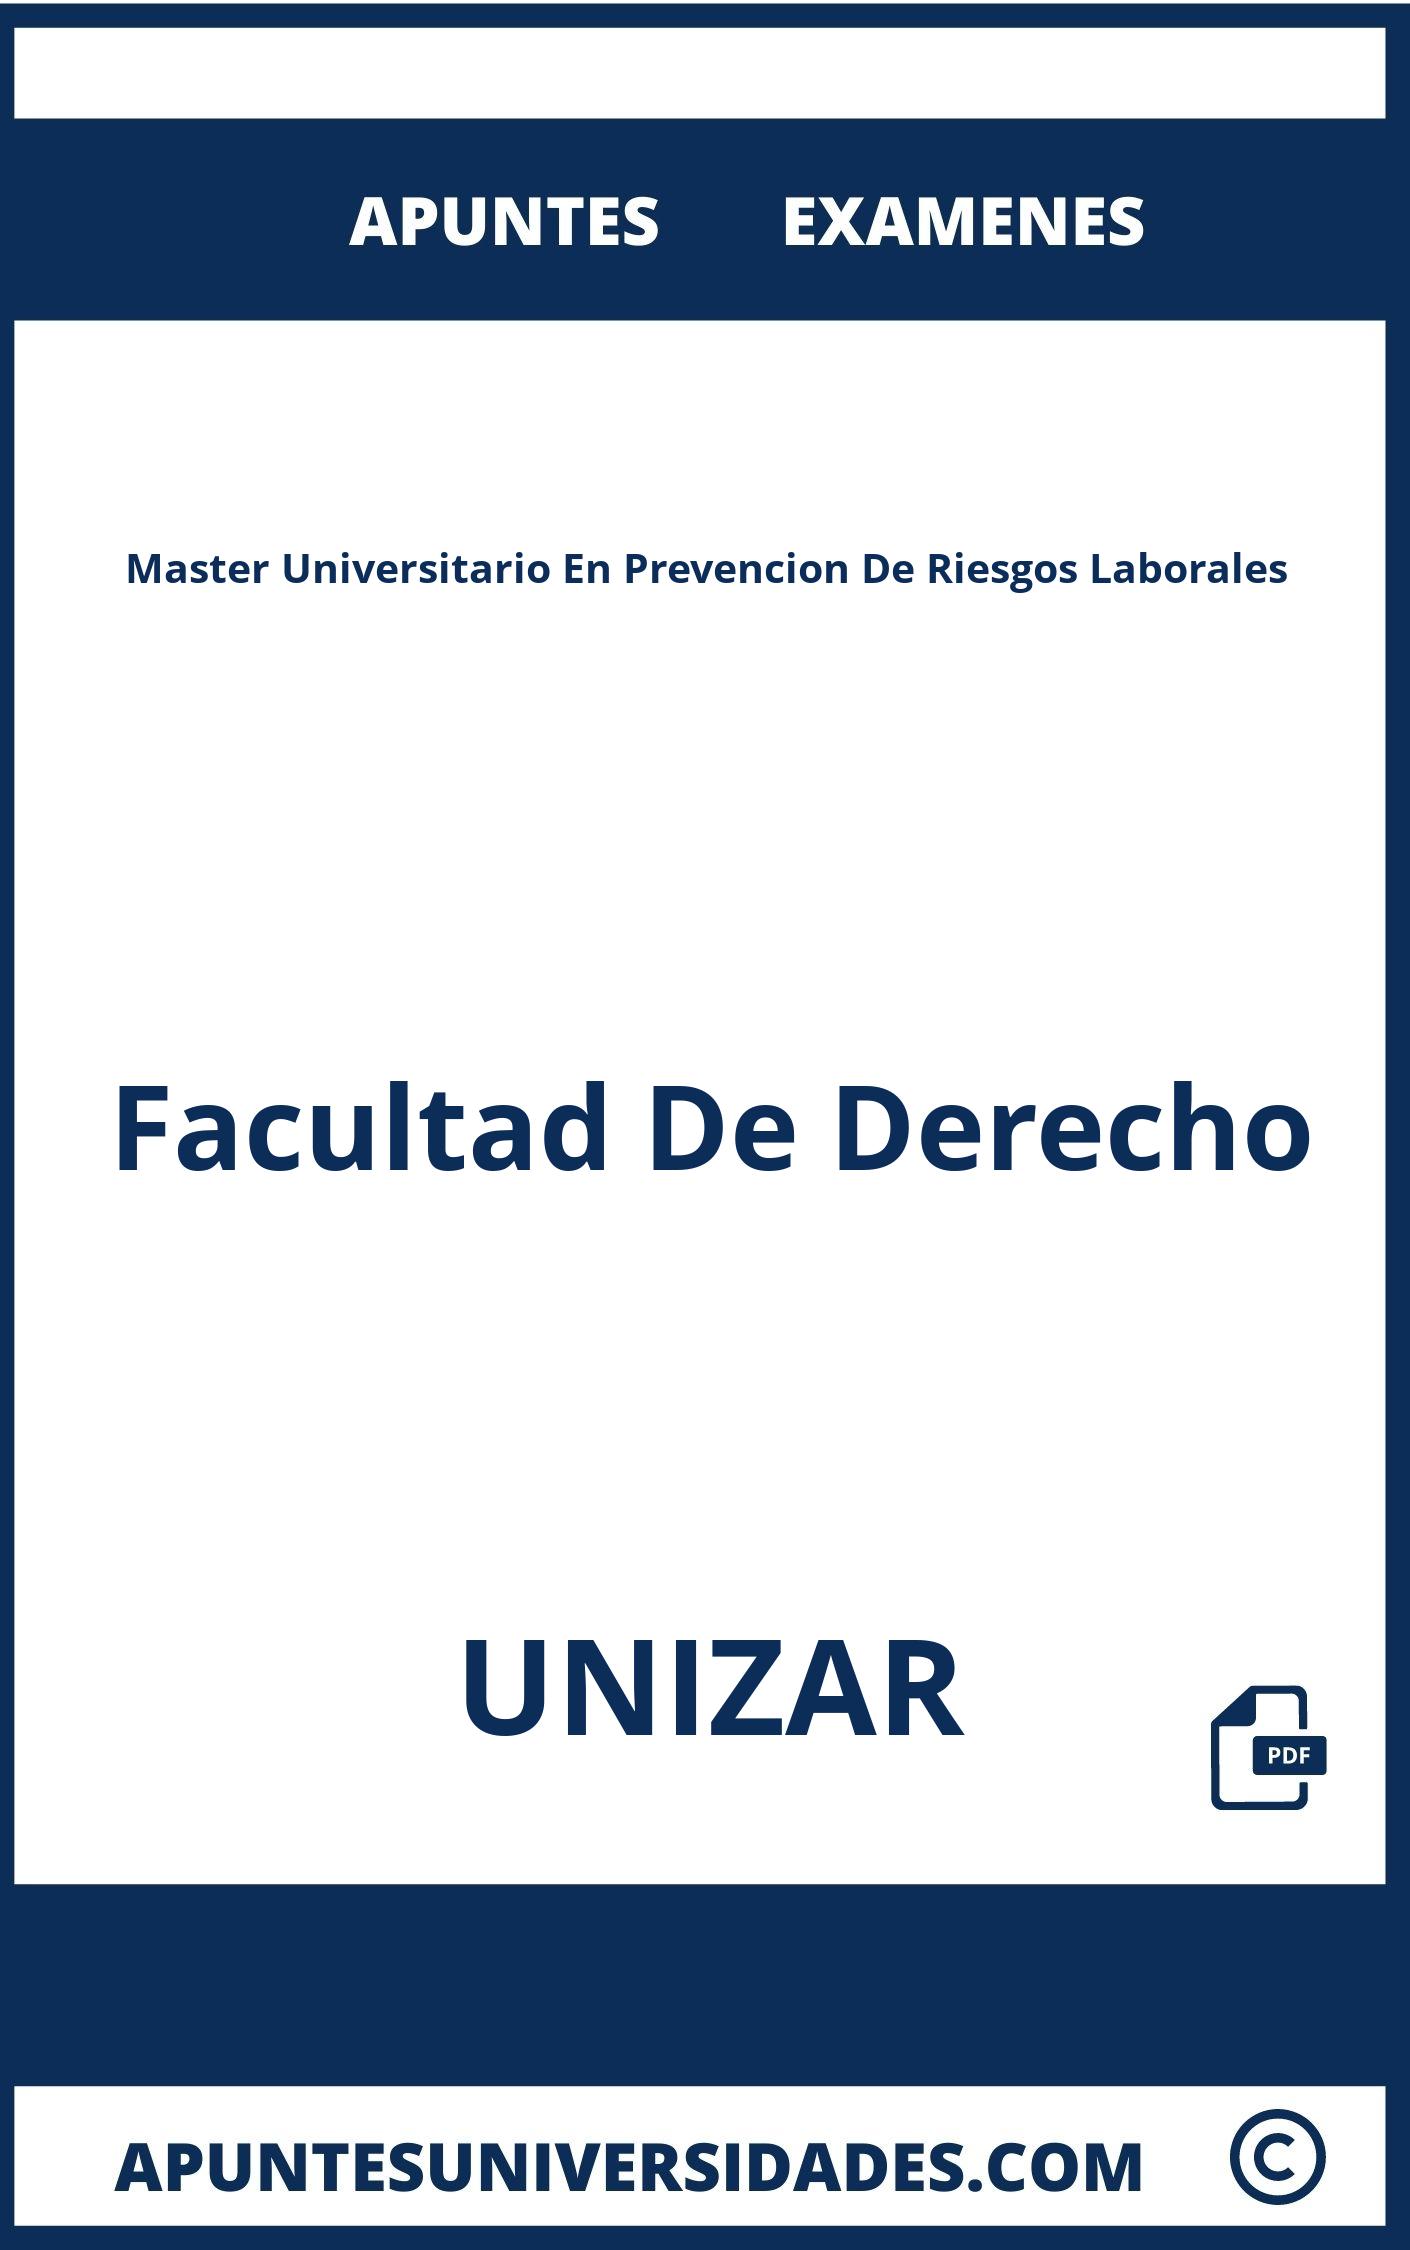 Master Universitario En Prevencion De Riesgos Laborales UNIZAR Examenes Apuntes